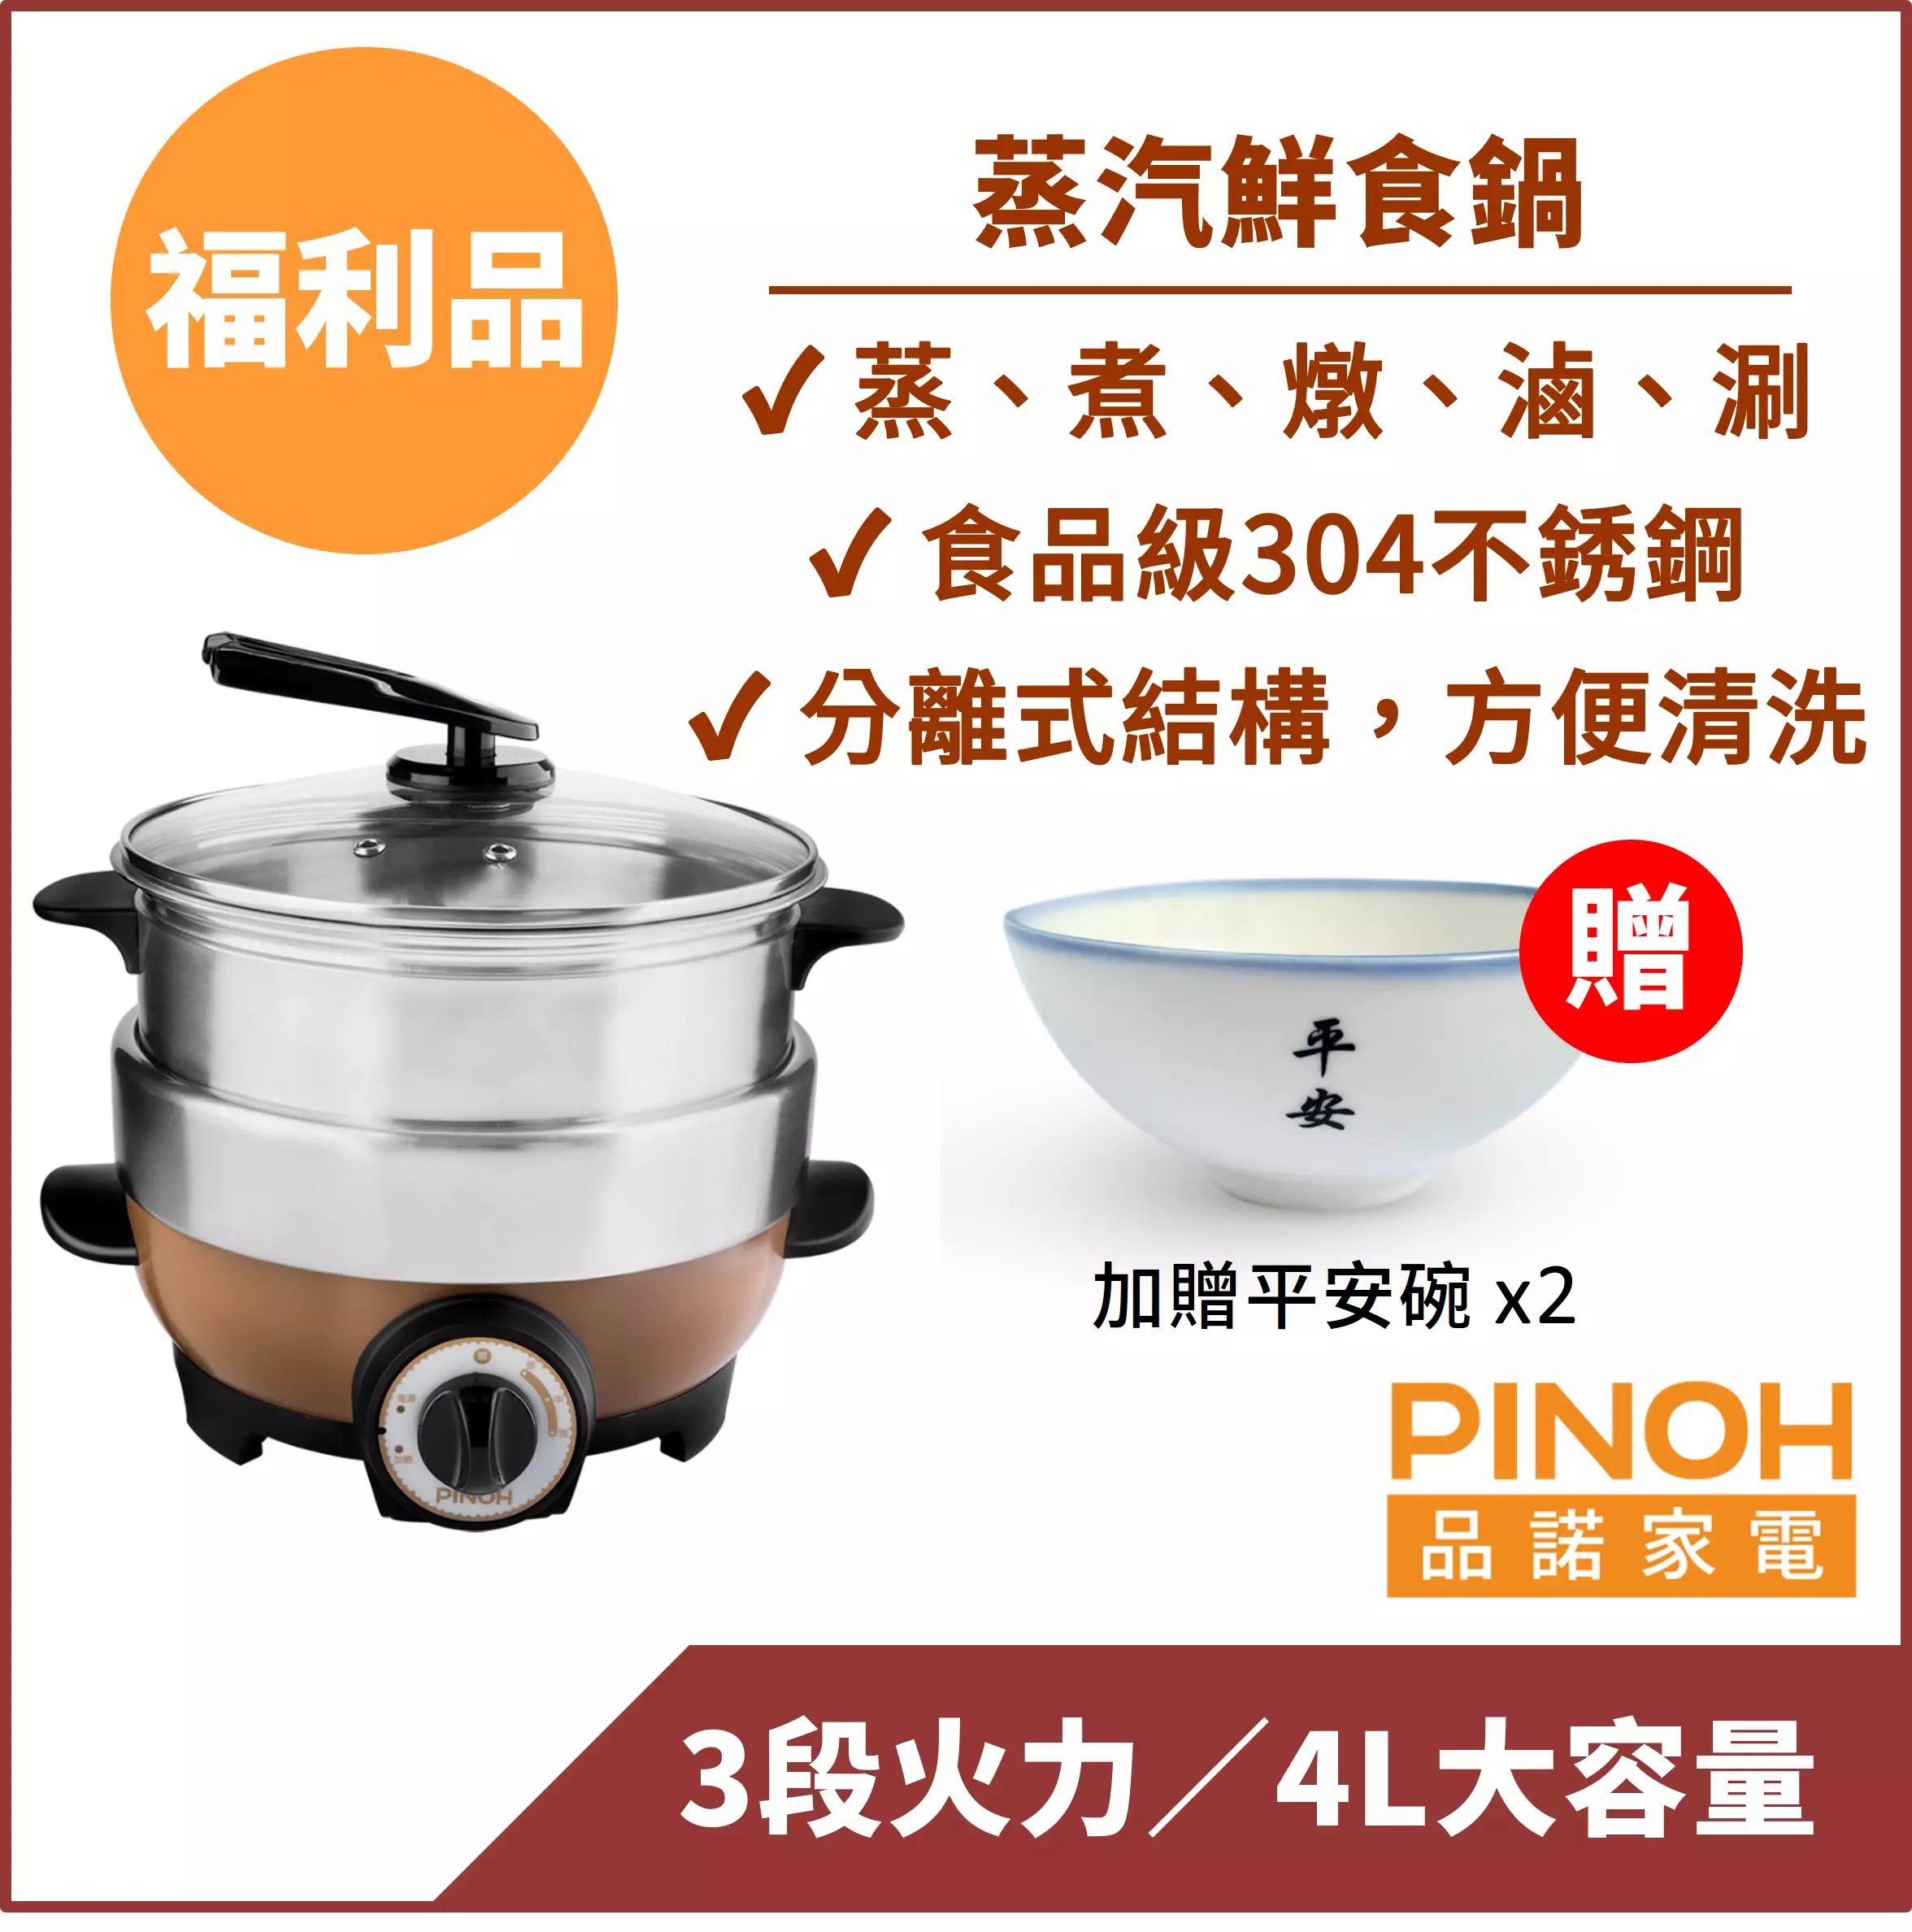 【PINOH品諾】蒸汽鮮食鍋/蒸氣火鍋【福利品】-『買就送平安碗x2」